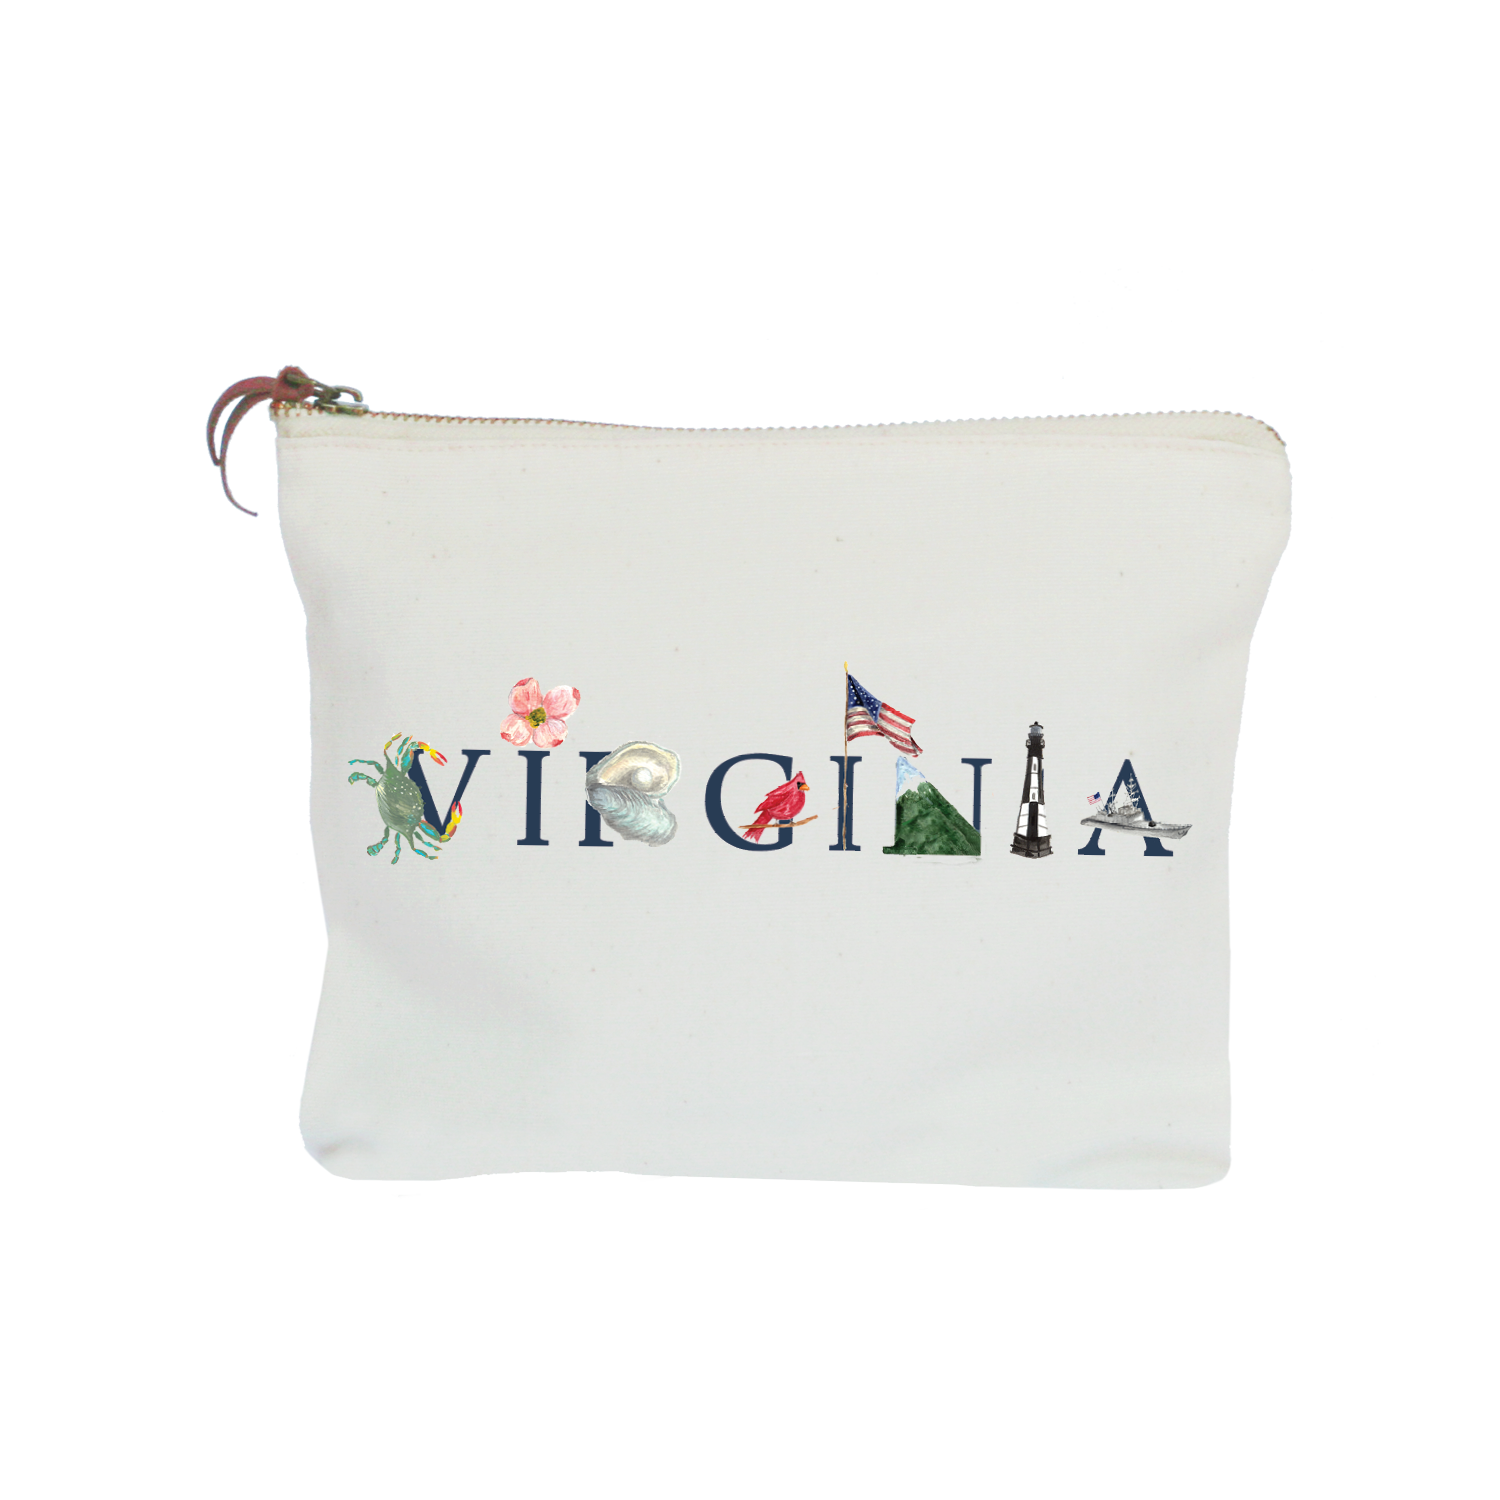 Virginia zipper pouch